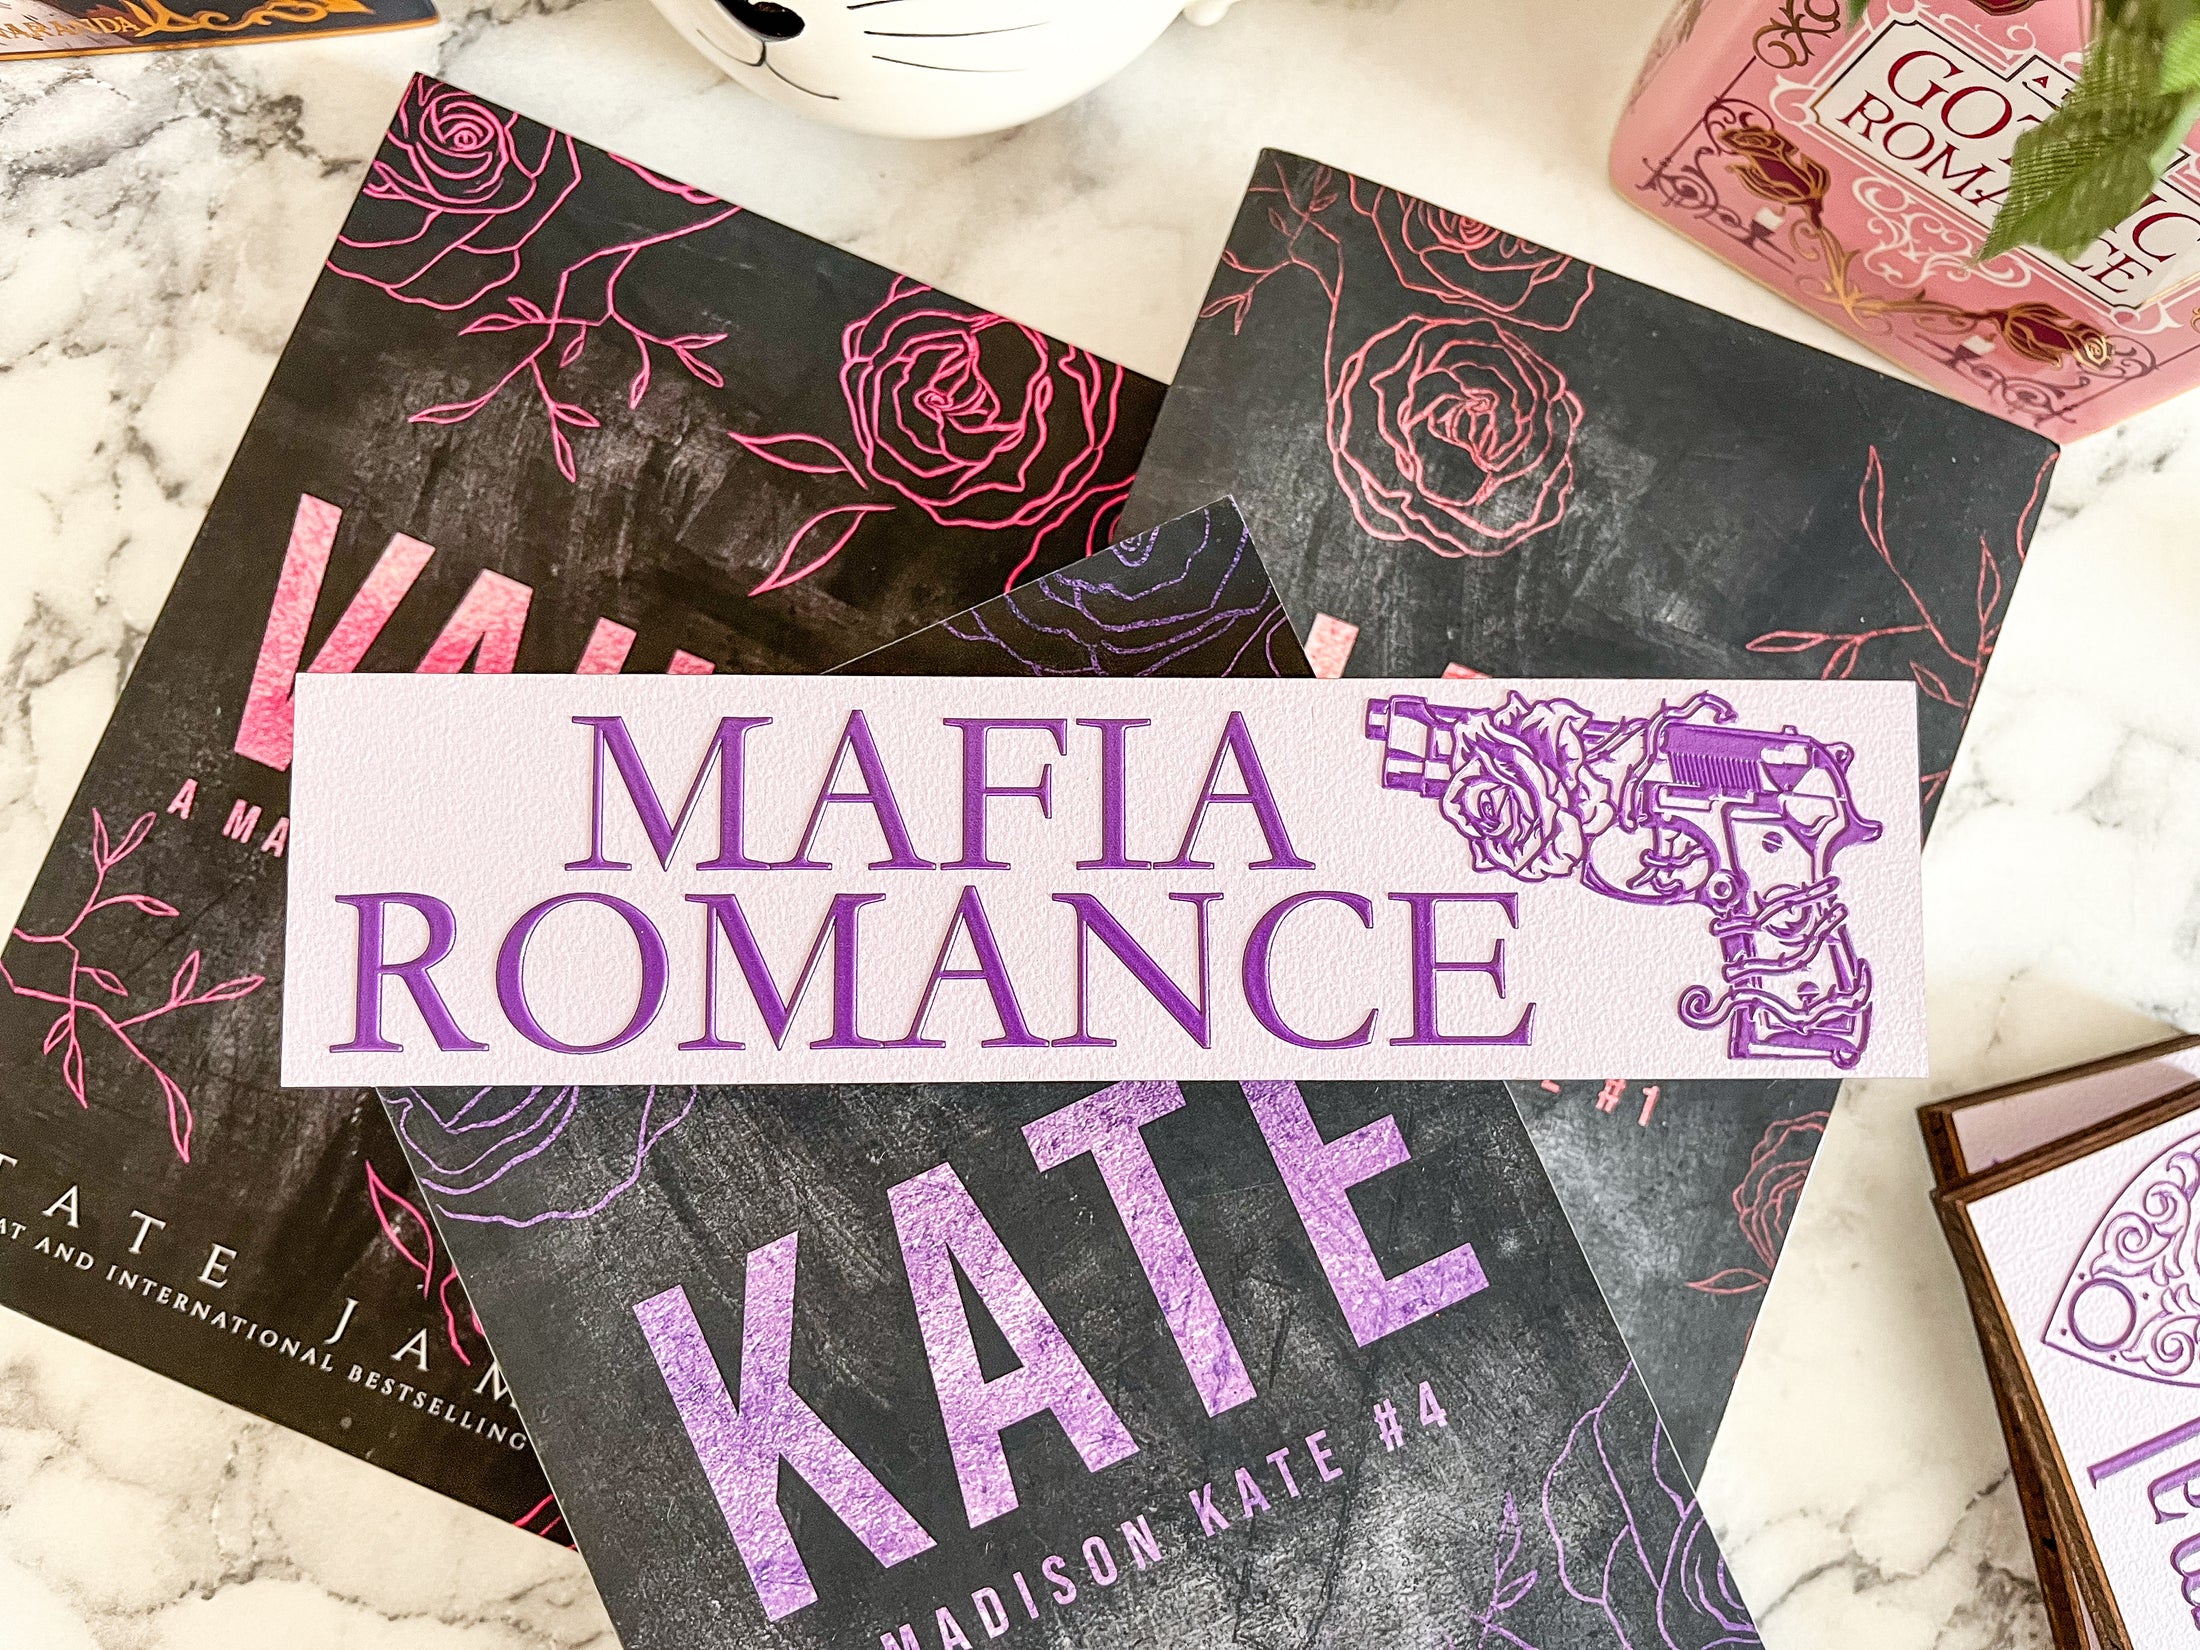 Mafia Romance Shelf Mark™ in Light Purple & Dark Purple by FireDrake Artistry™